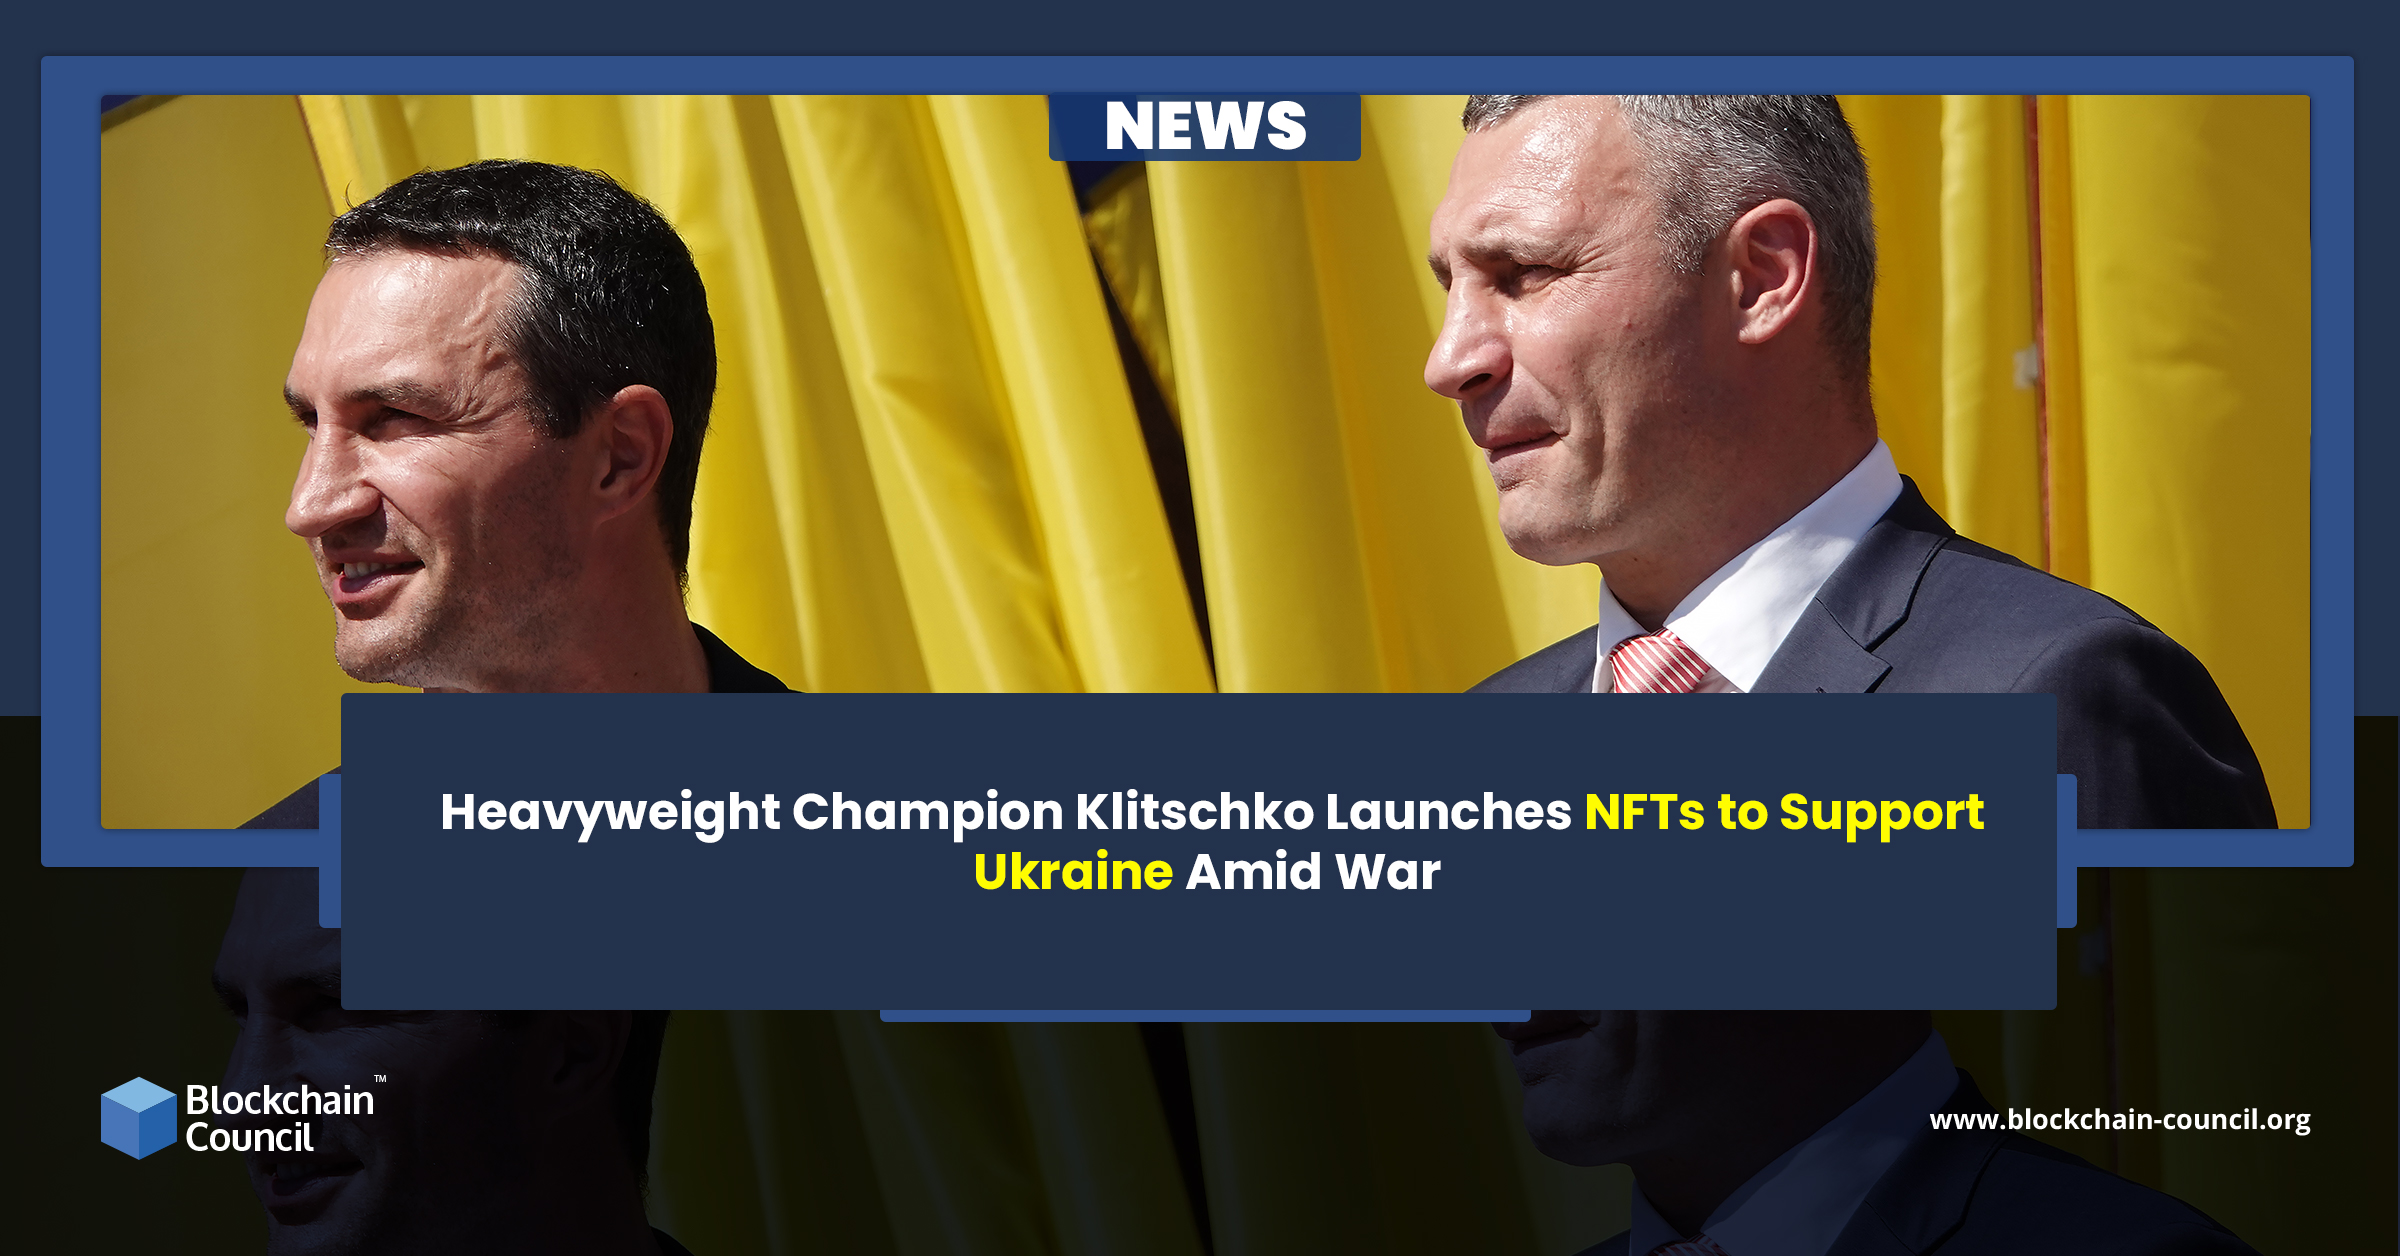 Heavyweight Champion Klitschko Launches NFTs to Support Ukraine Amid War